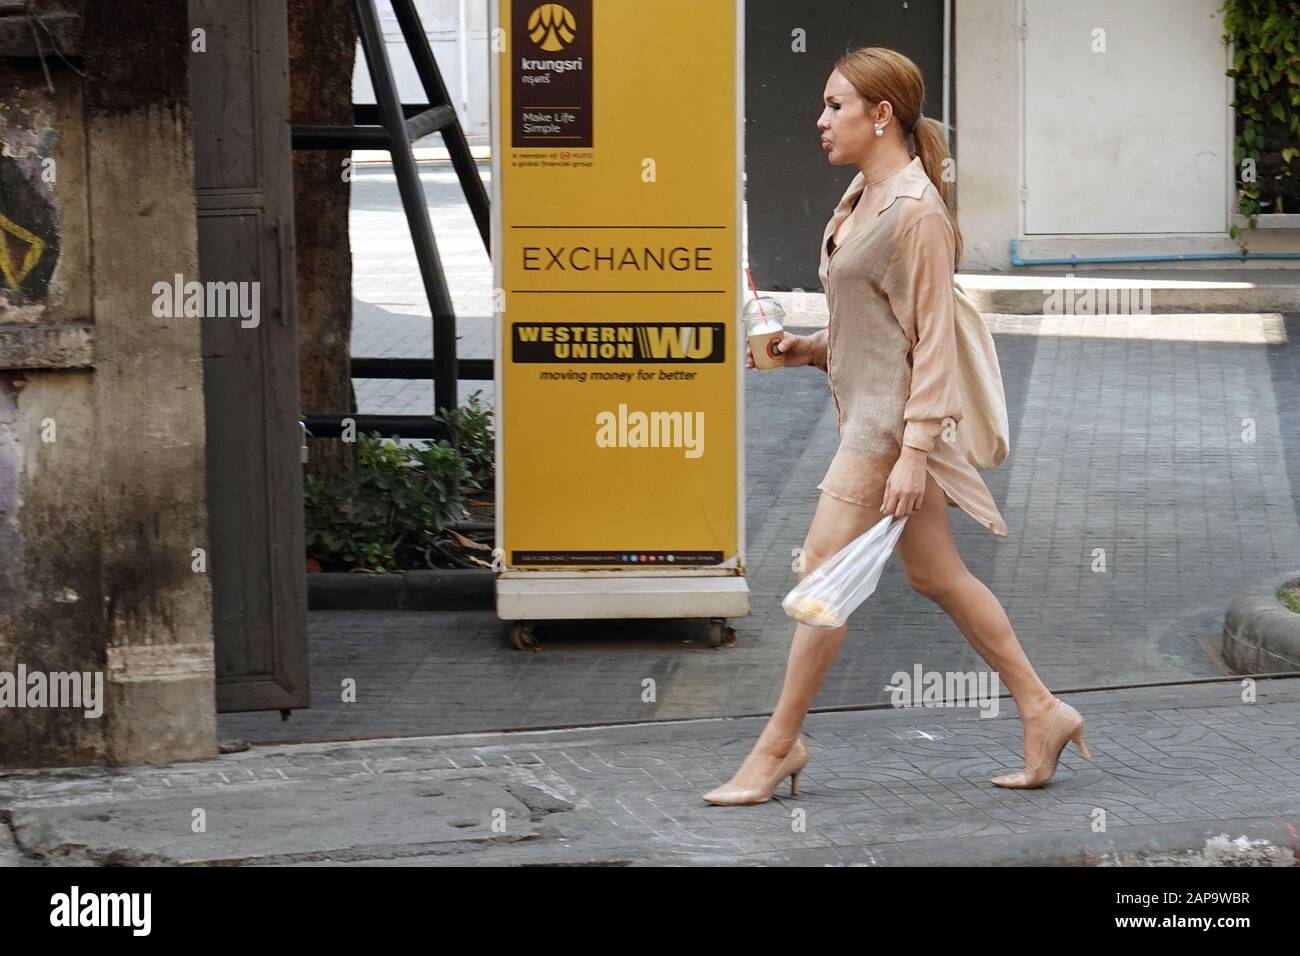 Bangkok, Thailand - 26. Dezember 2019: Transgender-Frau, Marienkind, die auf dem Bürgersteig spazieren geht und an Western Union Anzeige vorbeigeht, wo Text "Austausch" steht. Stockfoto